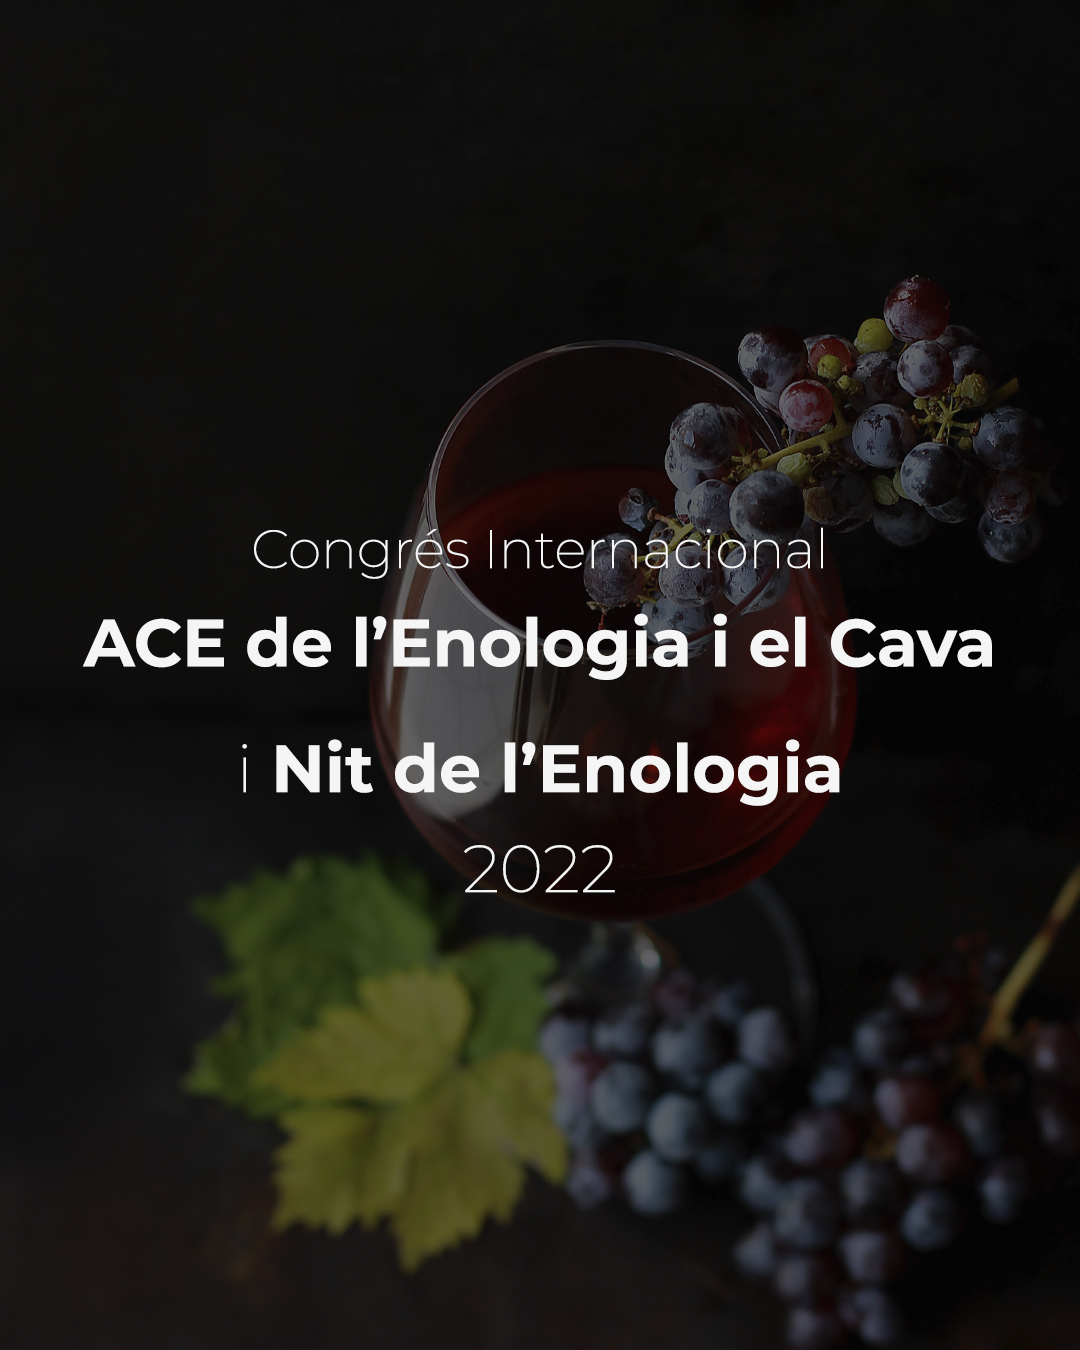 Read more about the article Congrés internacional ACE de l’enologia i el Cava 2022